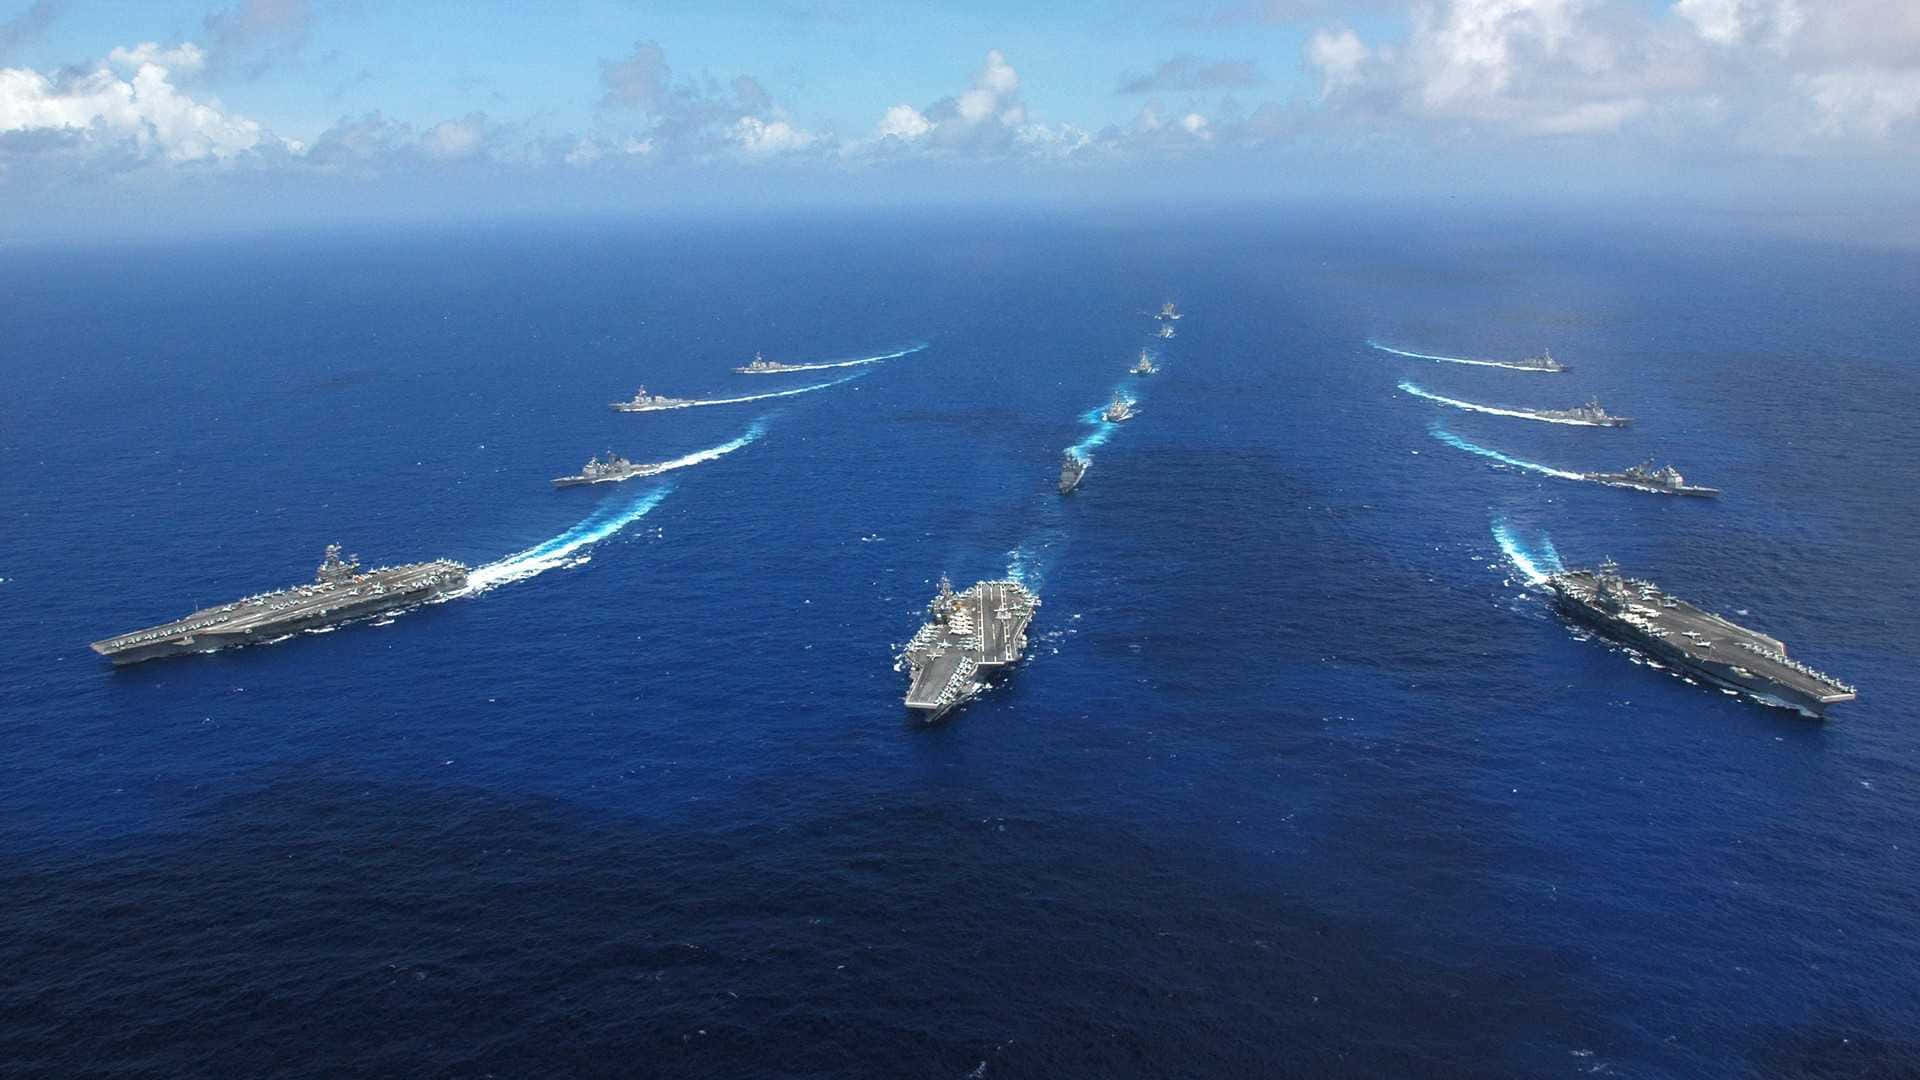 Breathtaking view of Navy warships at sea